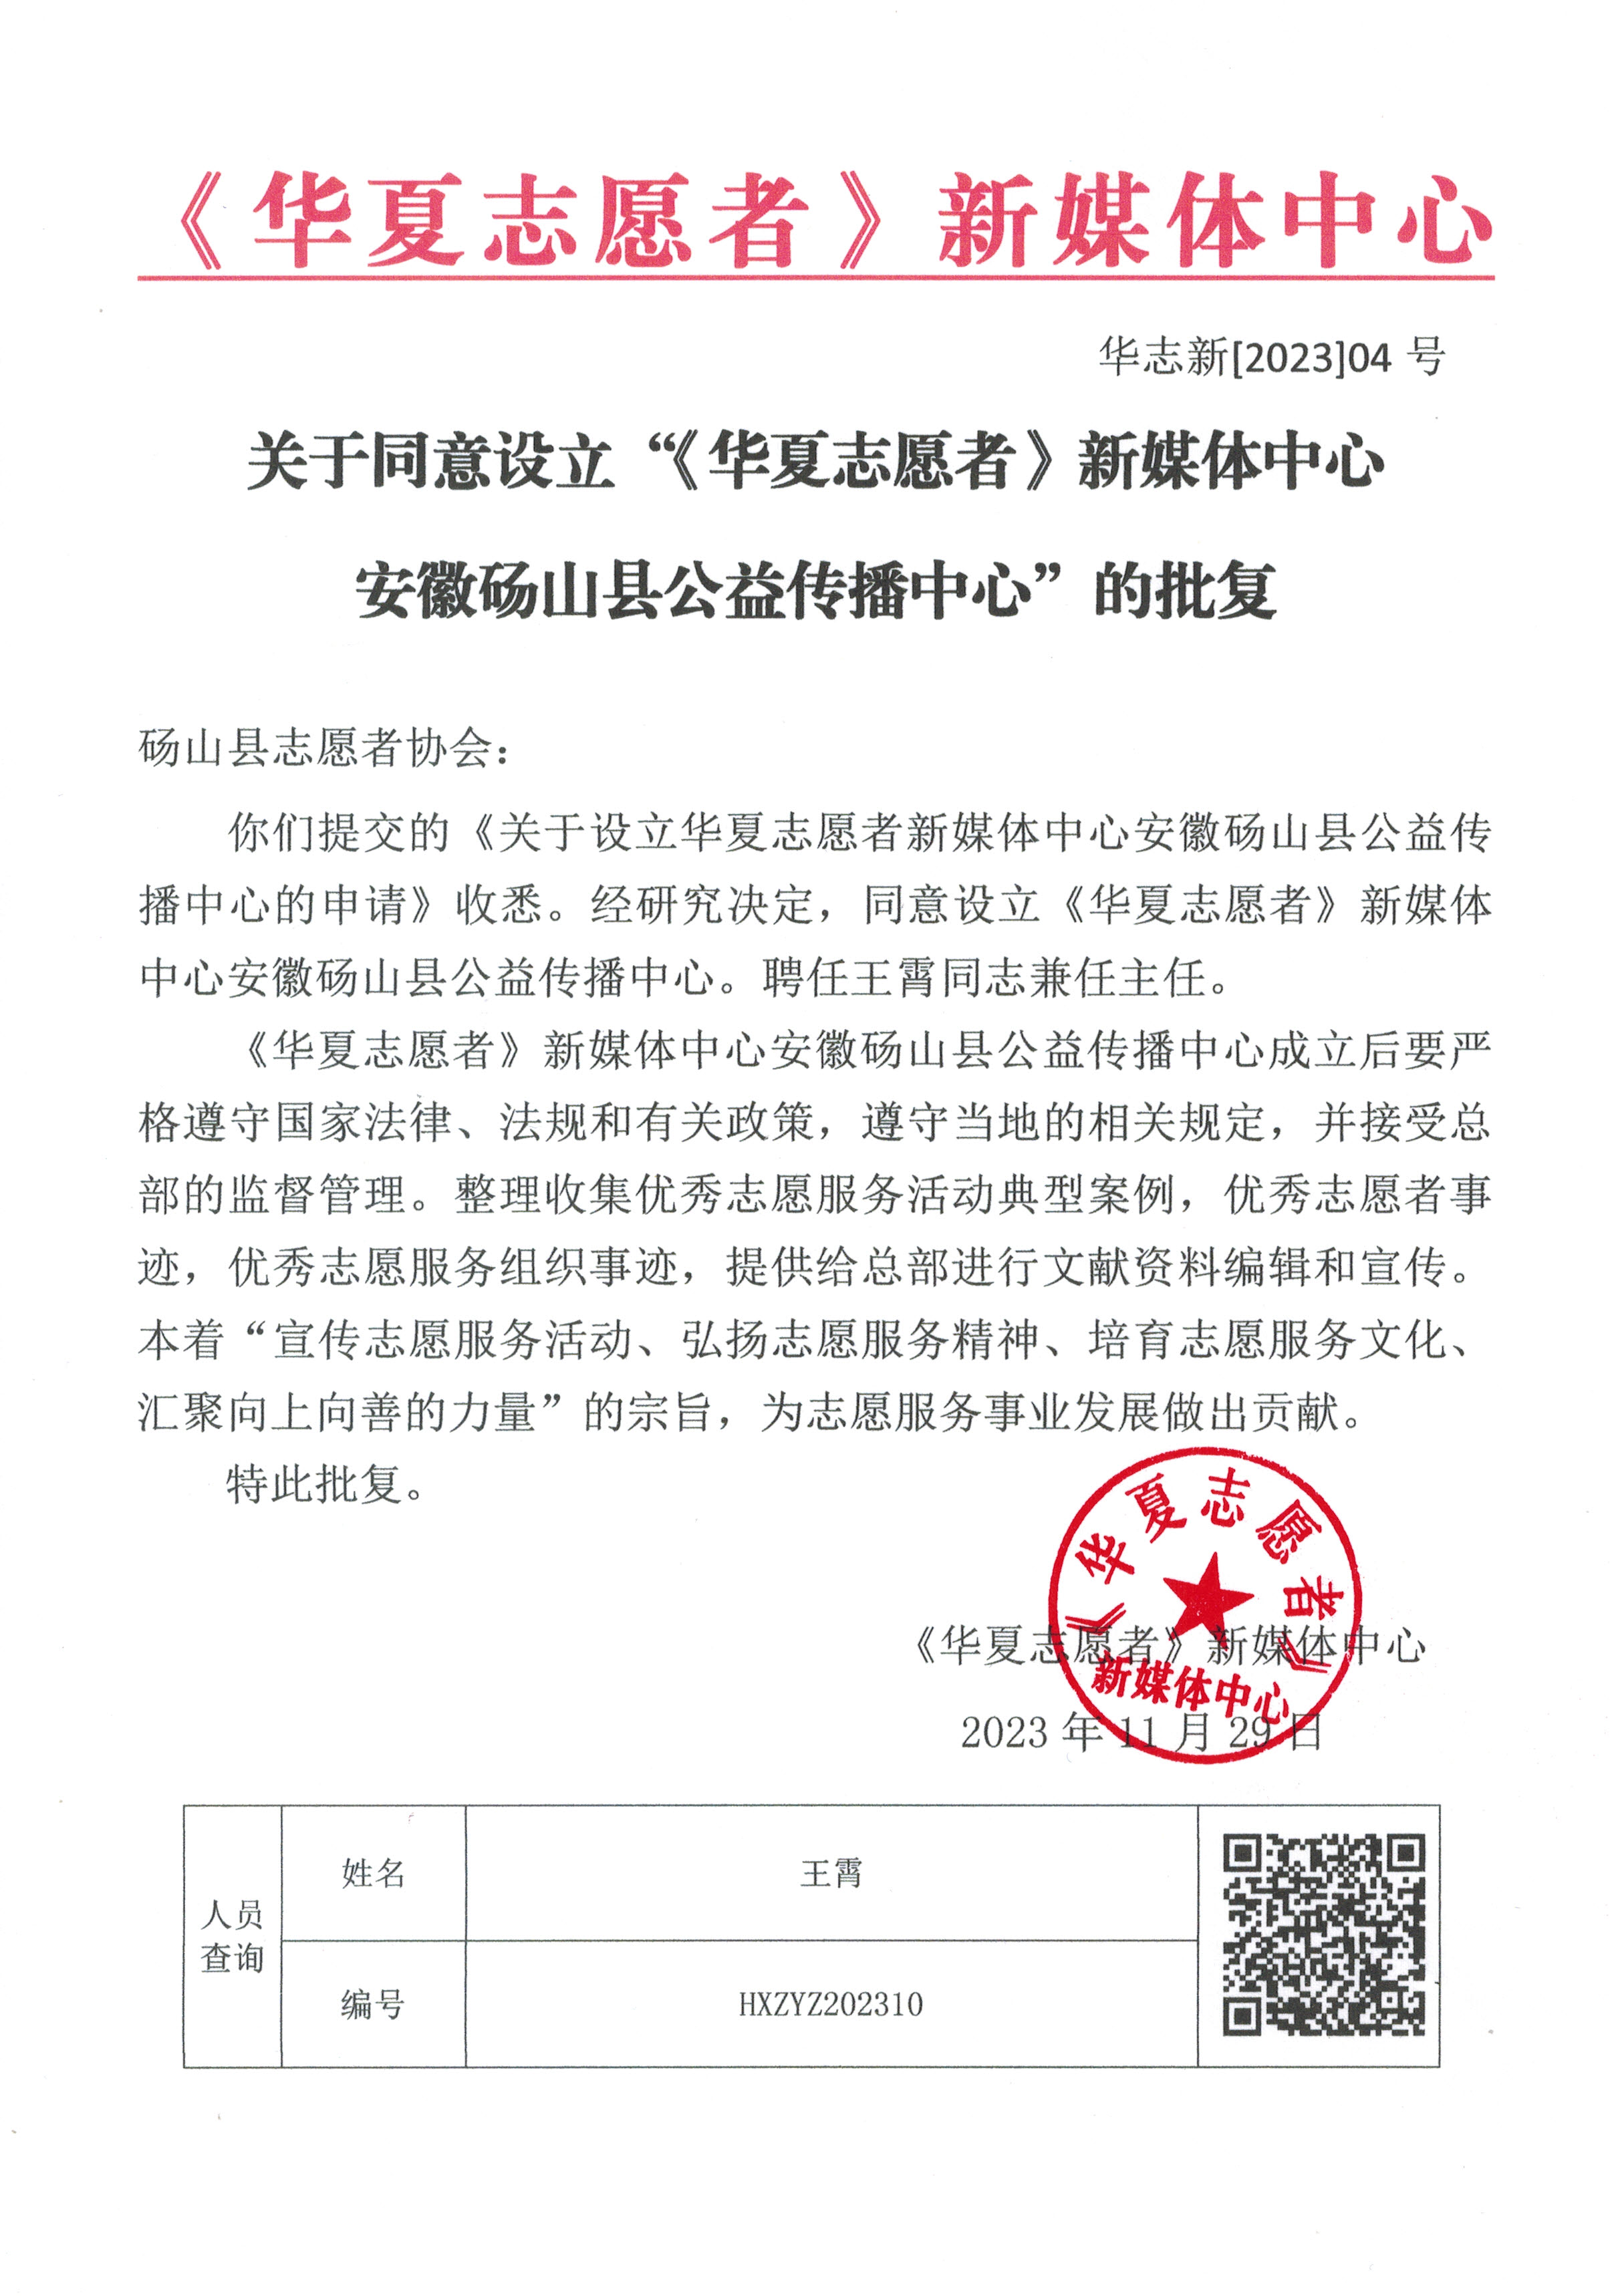 《华夏志愿者》新媒体中心安徽砀山县公益传播中心批准设立